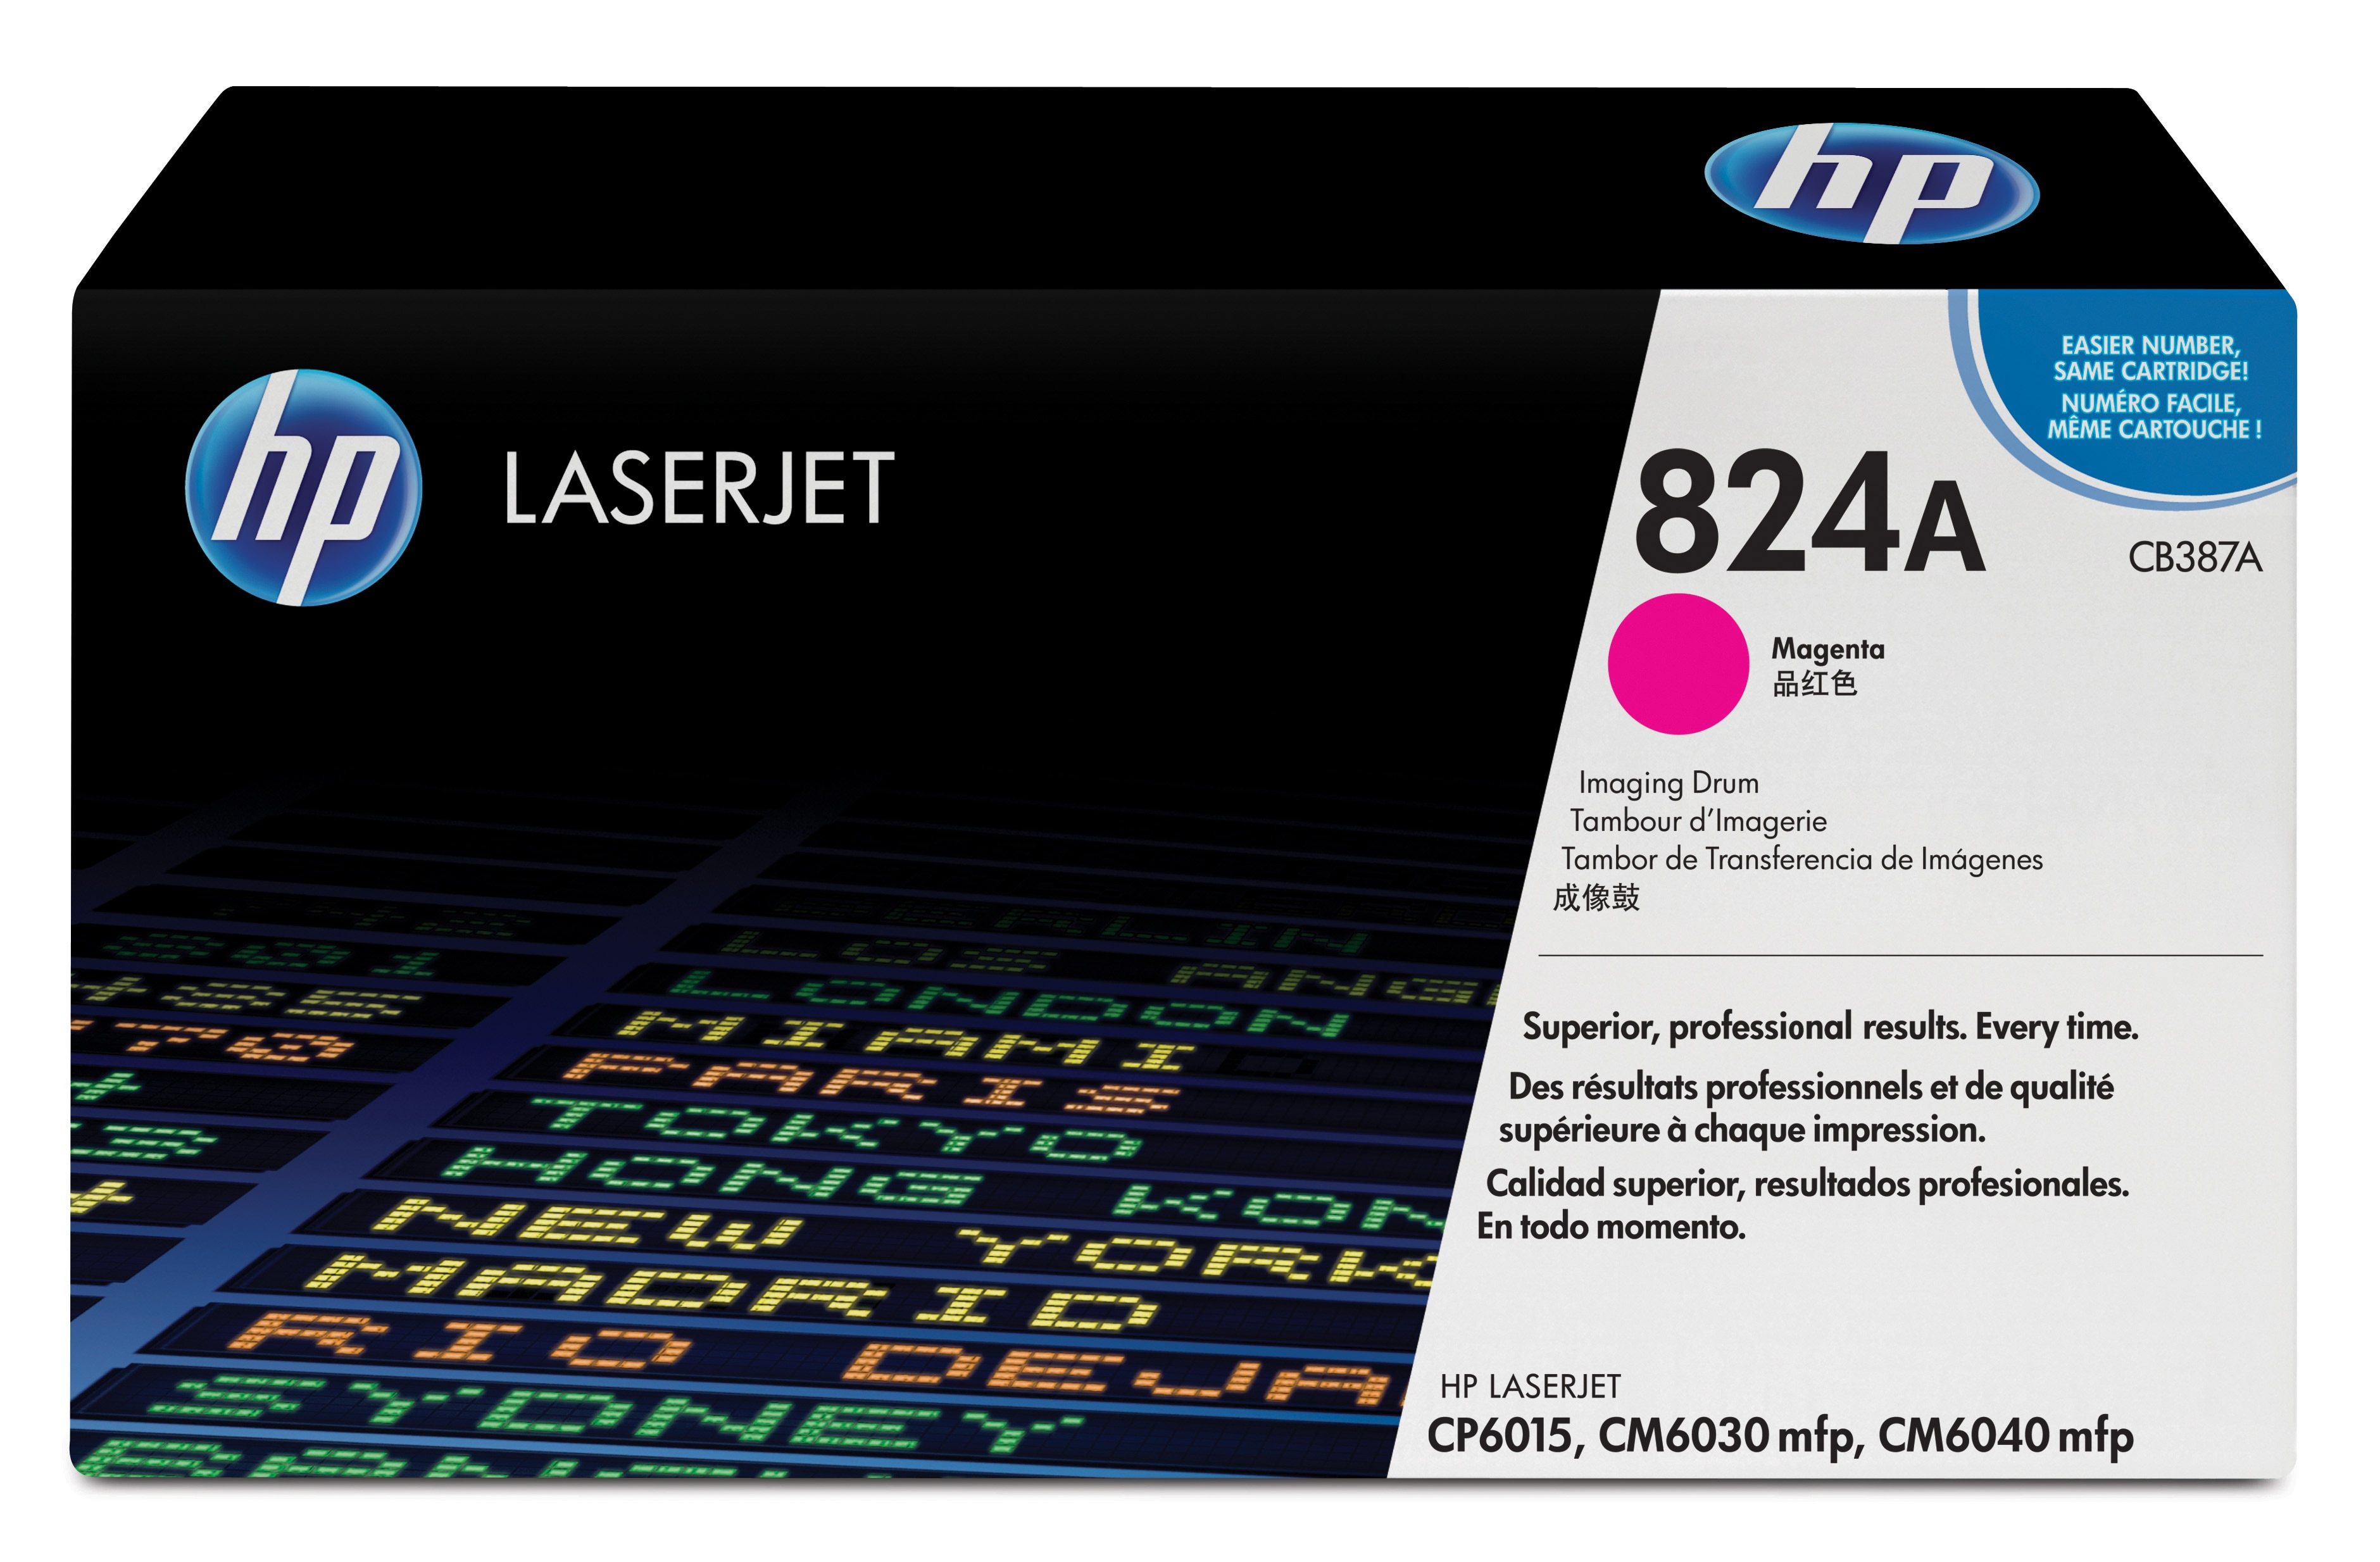 HP Color Laser Jet Magenta Image Drum